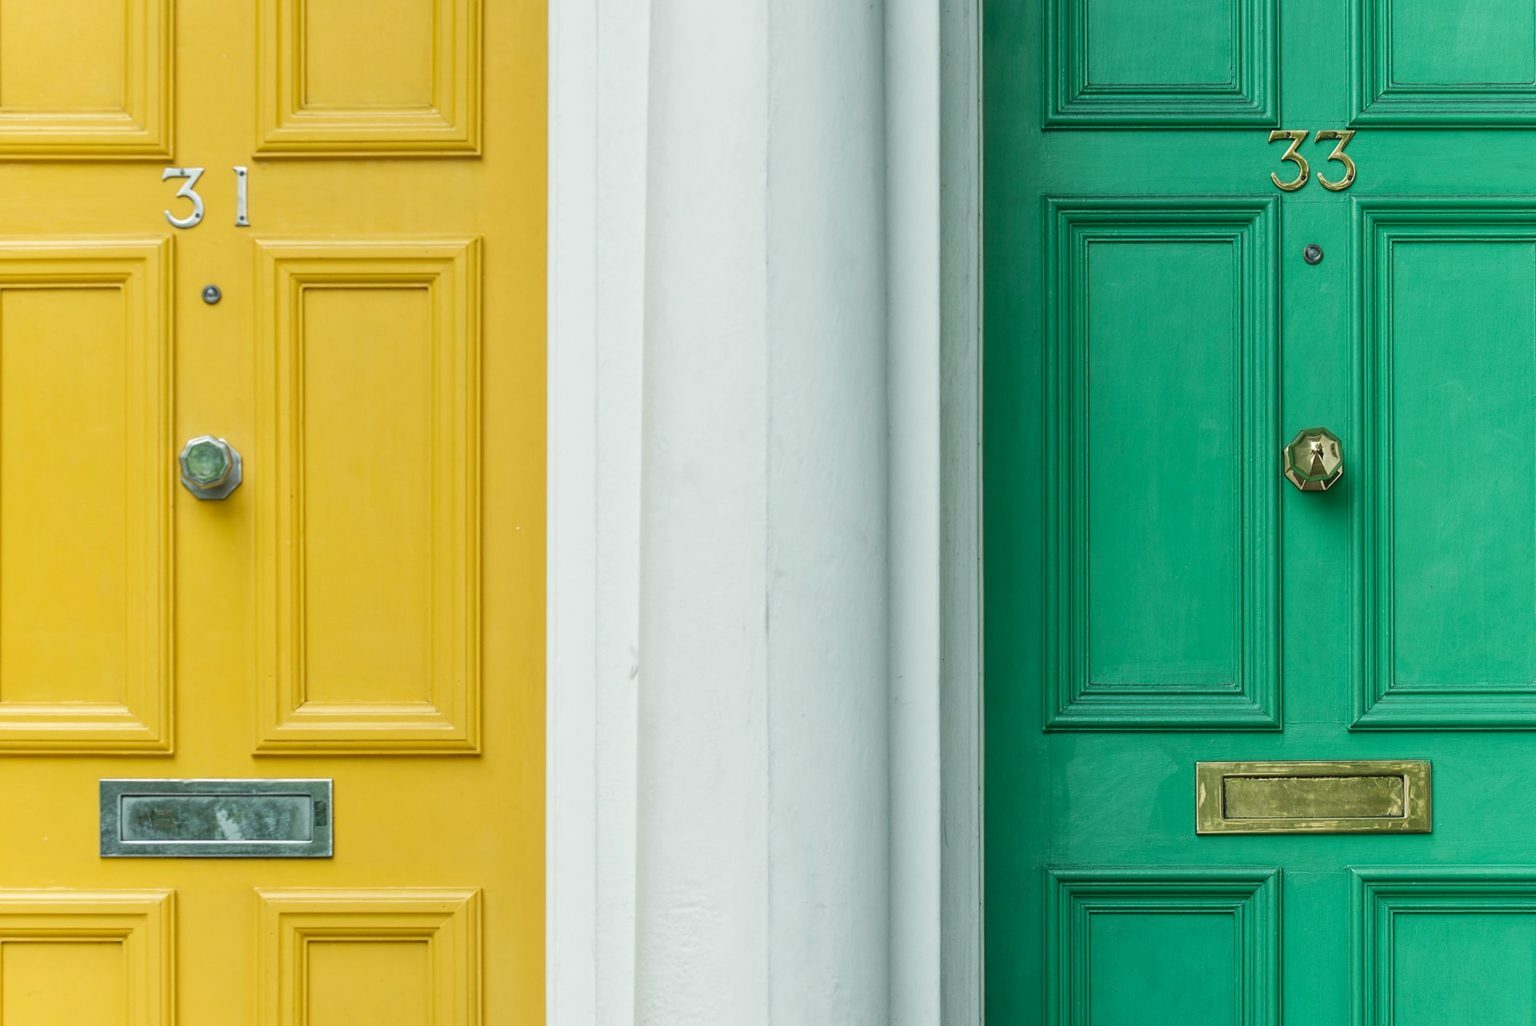 a green door with a white door